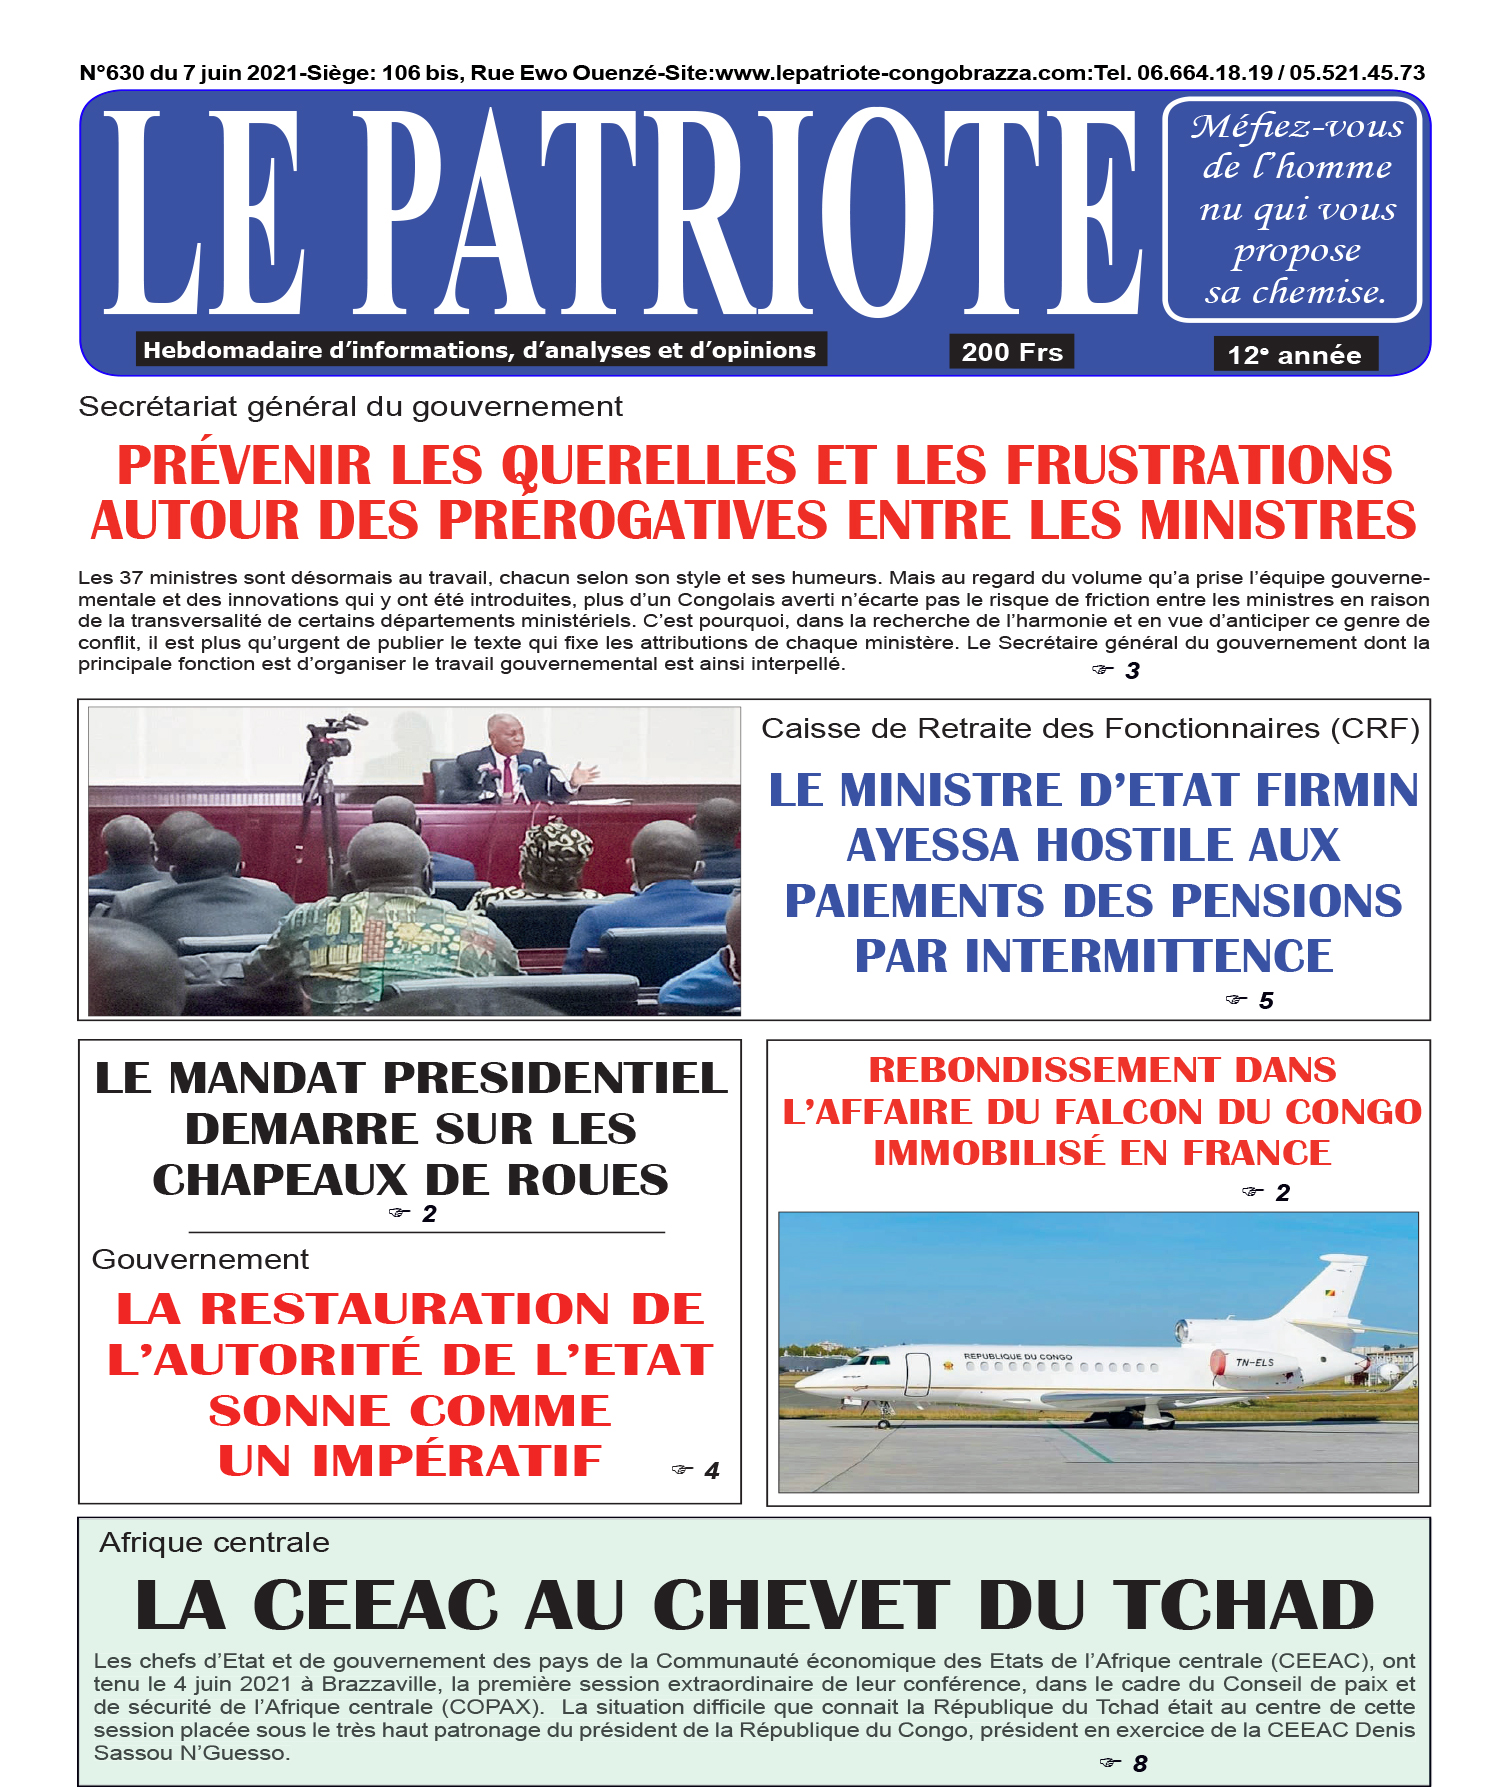 Cover Le Patriote - 630 